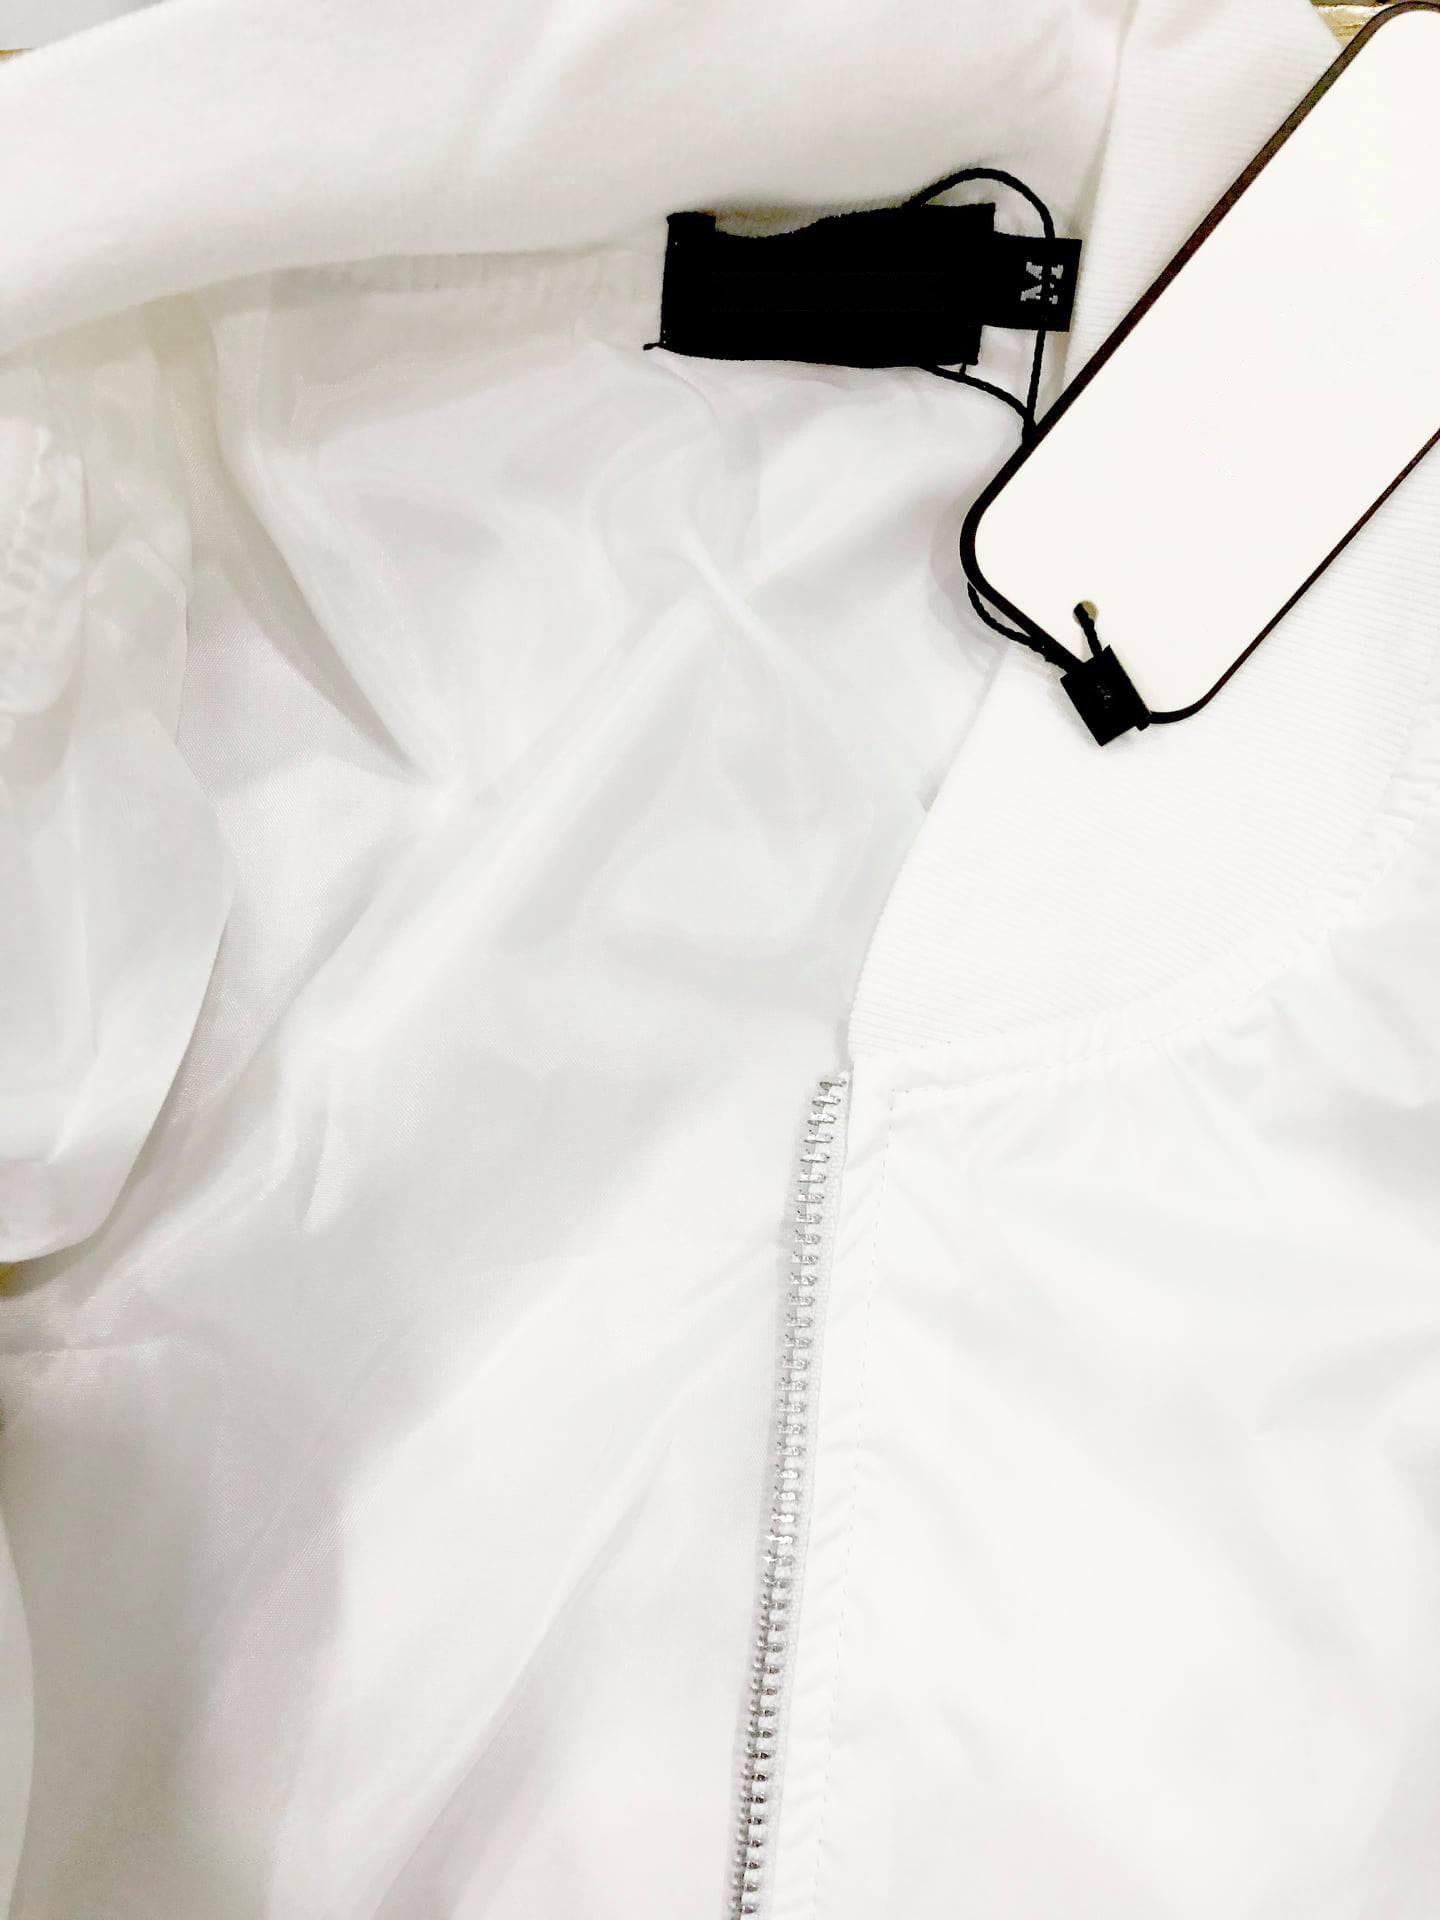 Áo Khoác Nam Dù 2 lớp Xin có túi trong khóa kéo túi ngoài, Áo khoác Nam trắng trơn thương hiệu Julido Store KFF01